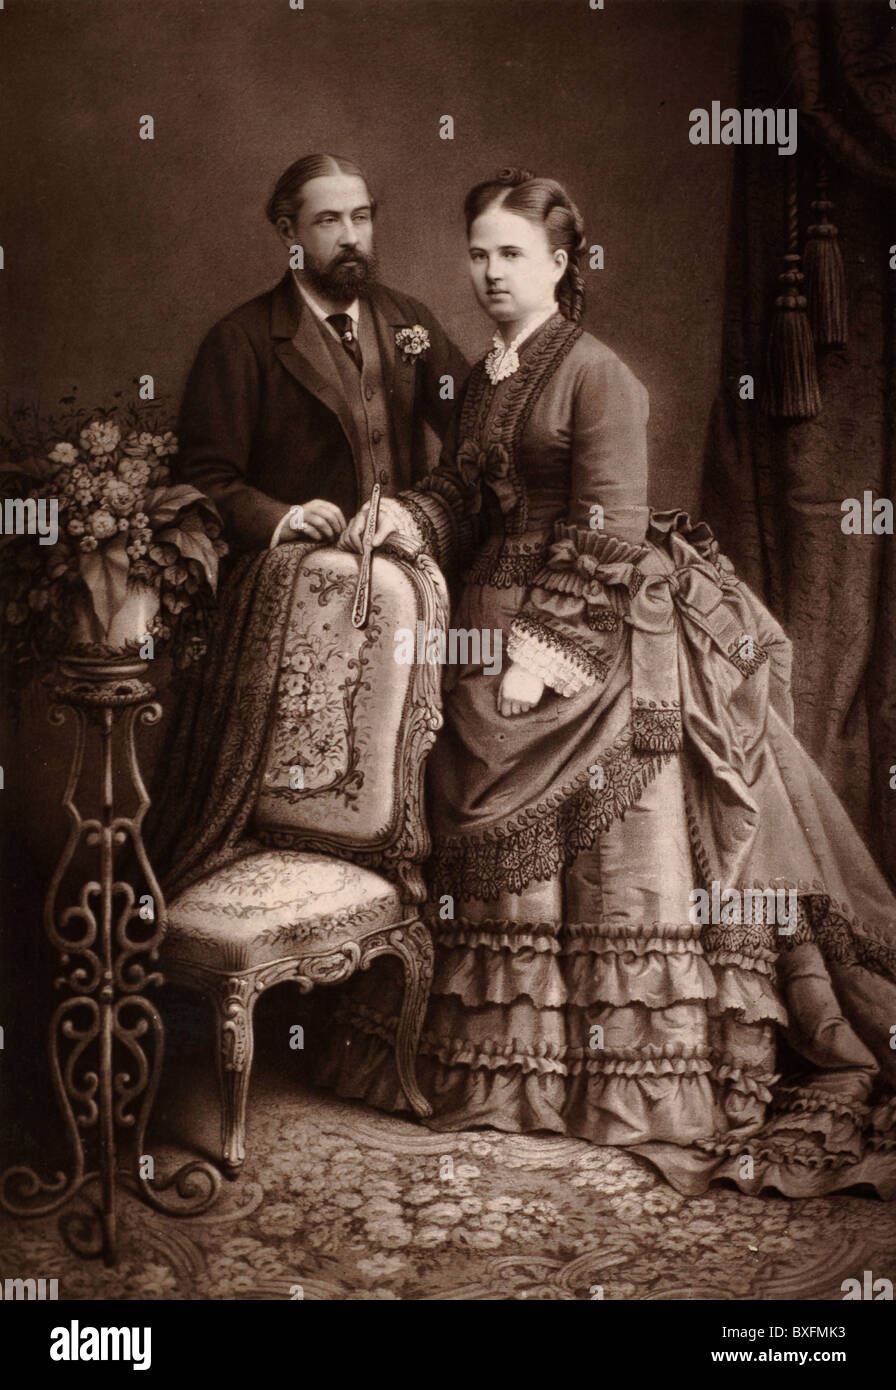 Príncipe Alfred (1844-1900) Duque de Edimburgo (2nd Hijo de la Reina Victoria), Duque de Saxe-Coburg y Gotha, y Gran Duquesa María Alexandrovna de Rusia (1853-1920), Segunda hija del zar Alejandro II de Rusia. Fotografía Vintage c1875 Foto de stock